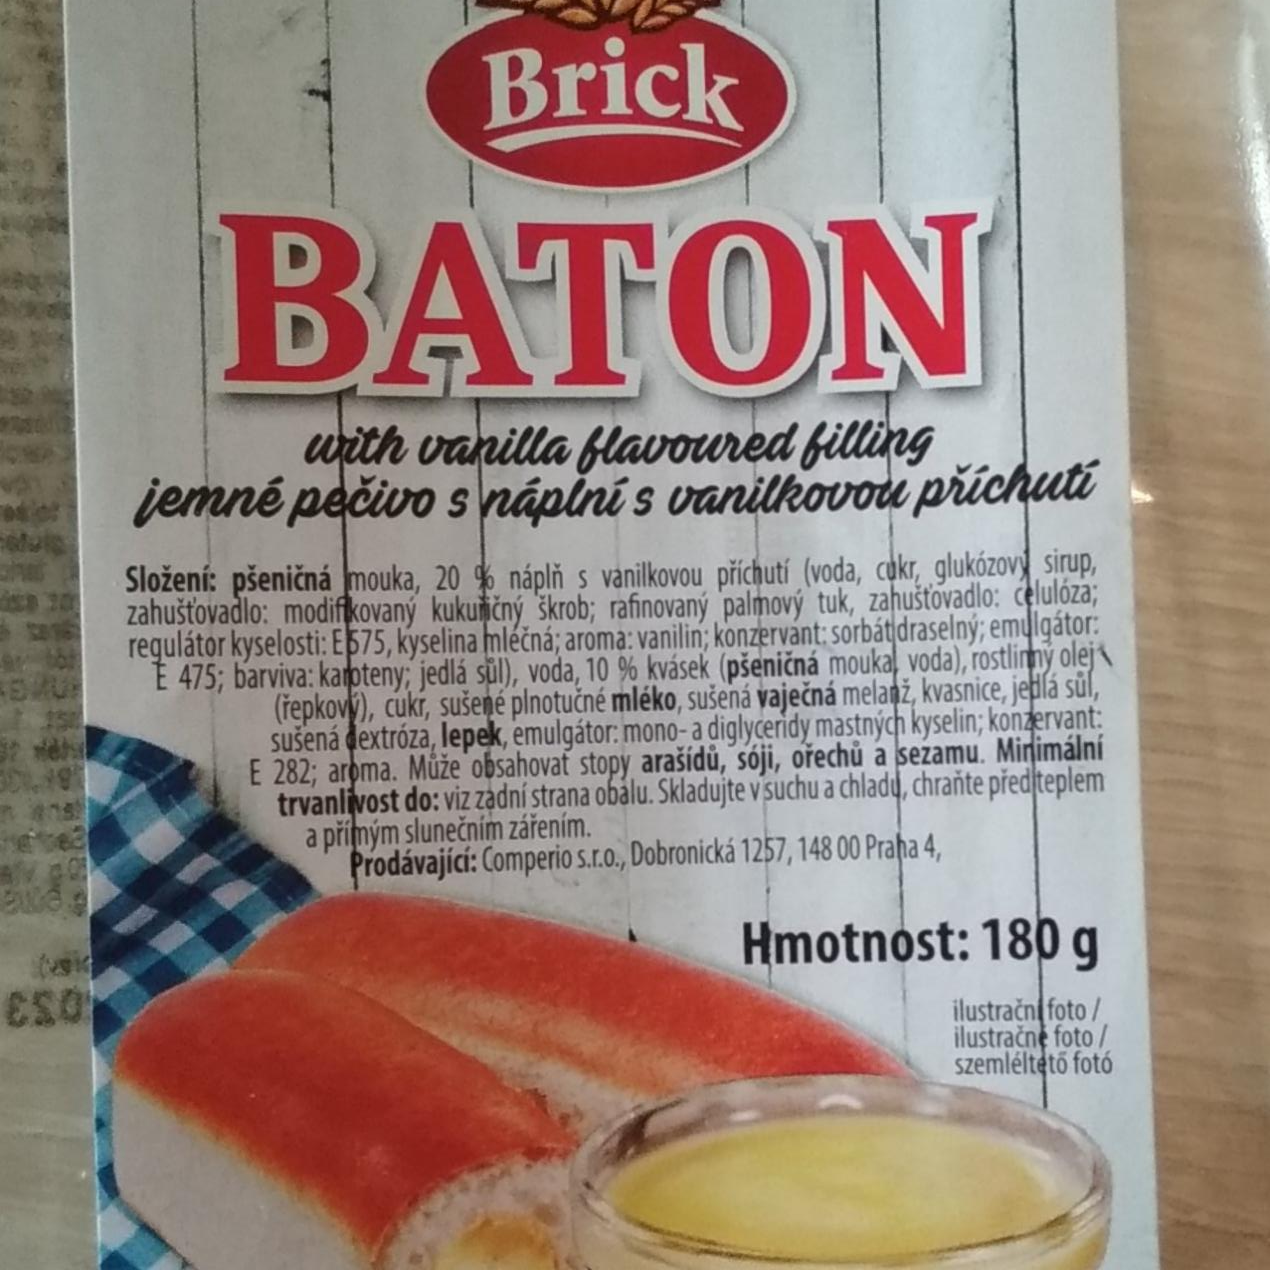 Fotografie - Baton jemné pečivo s náplní s vanilkovou příchutí Brick